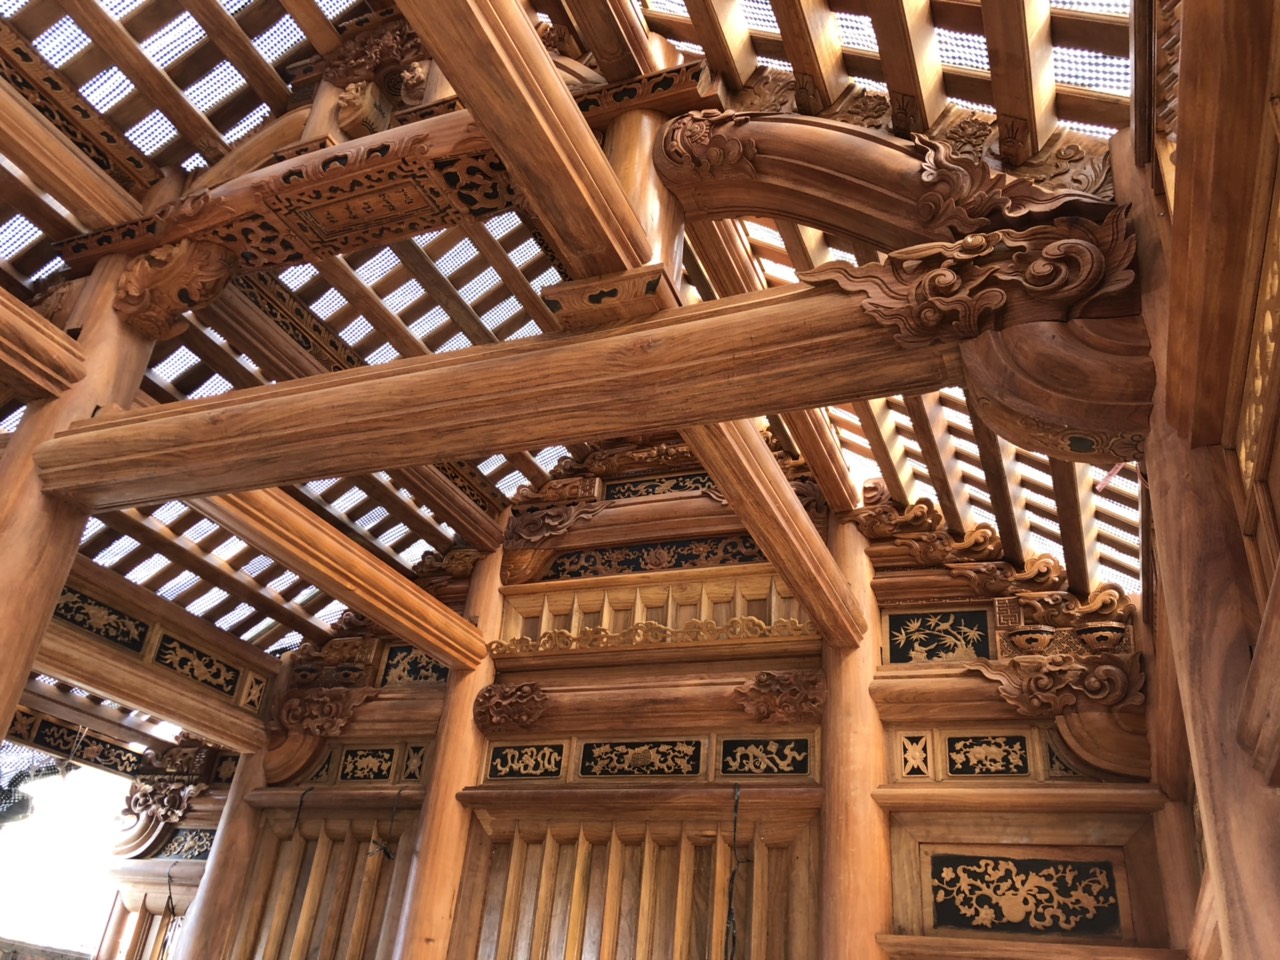 So với các loại kiến trúc khác, nhà gỗ có sự độc đáo và khác biệt riêng.